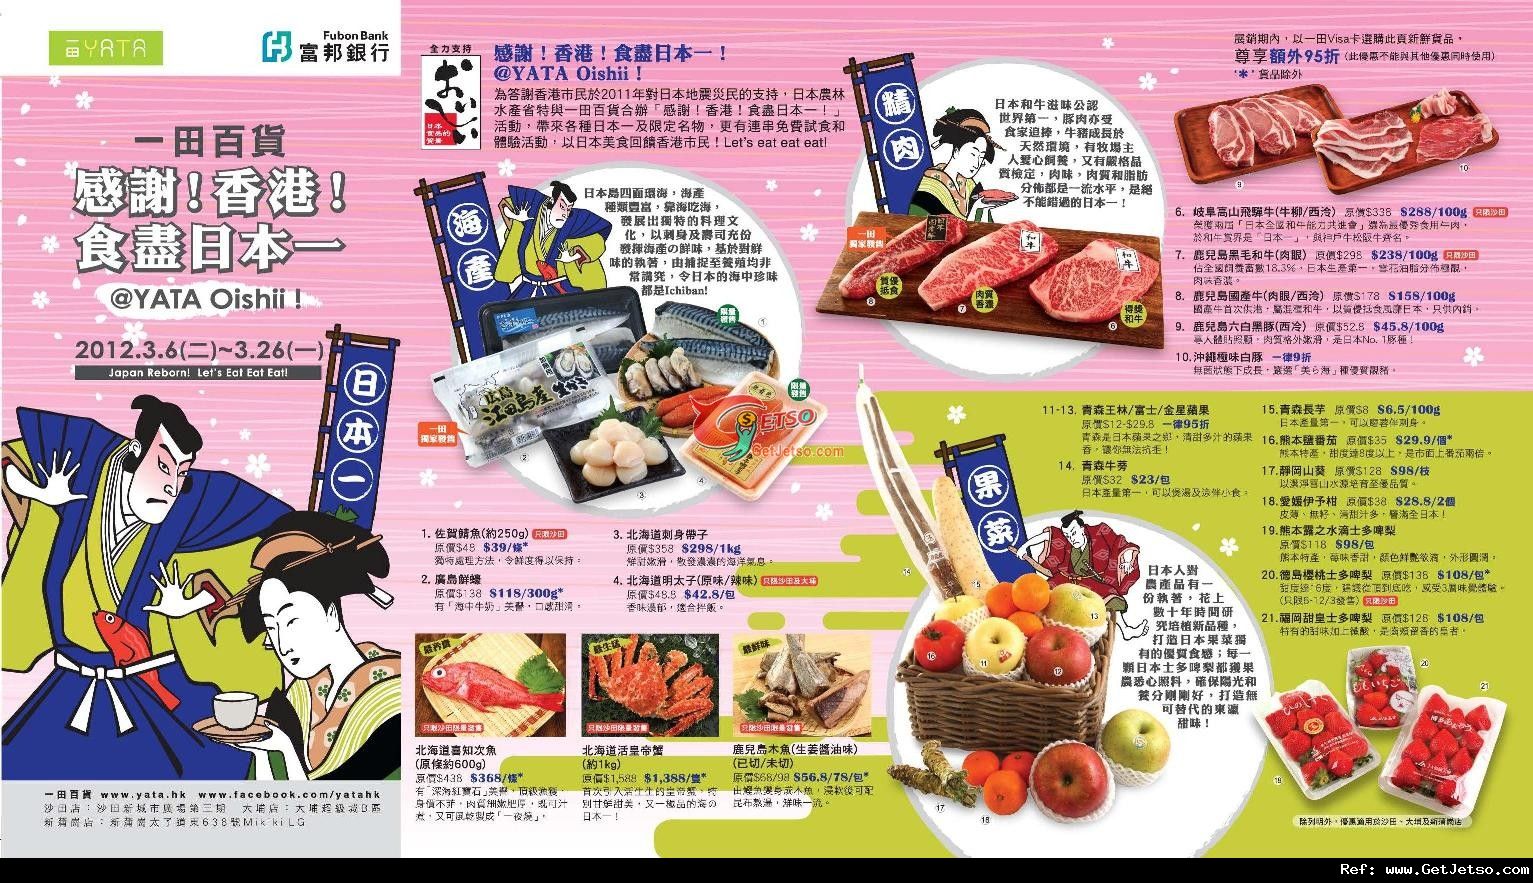 YATA Oishii！一田百貨日本限定名物試食及購物優惠(12年3月6-26日)圖片1